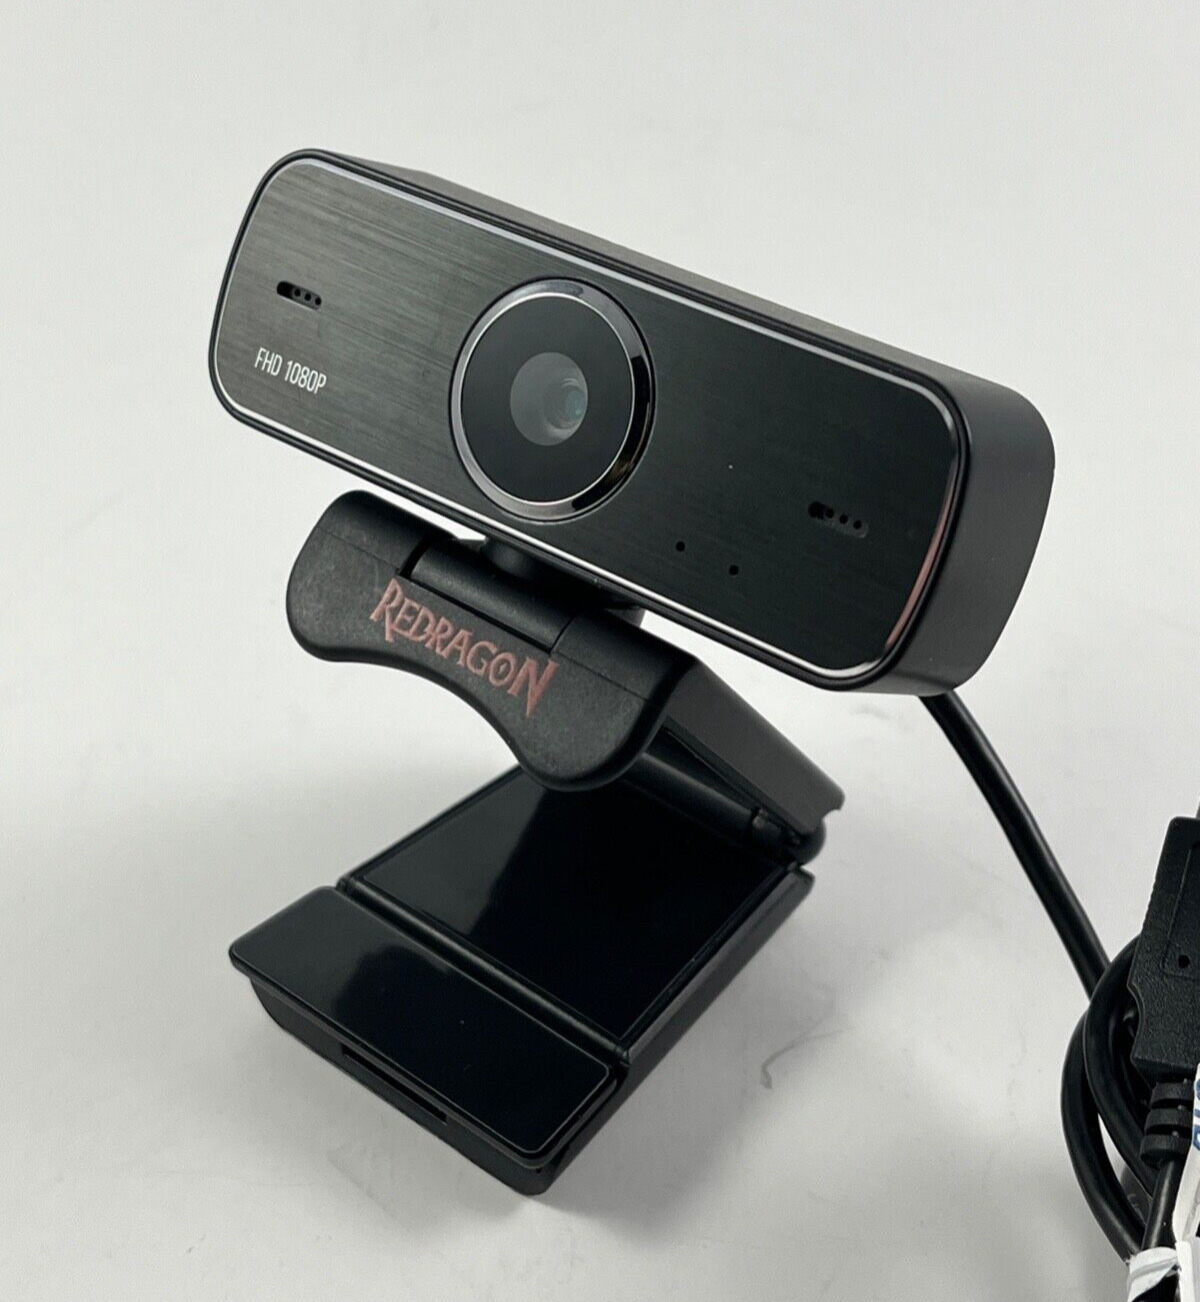 Redragon FHD 1080P USB Hitman Webcam Model GW800 tested working